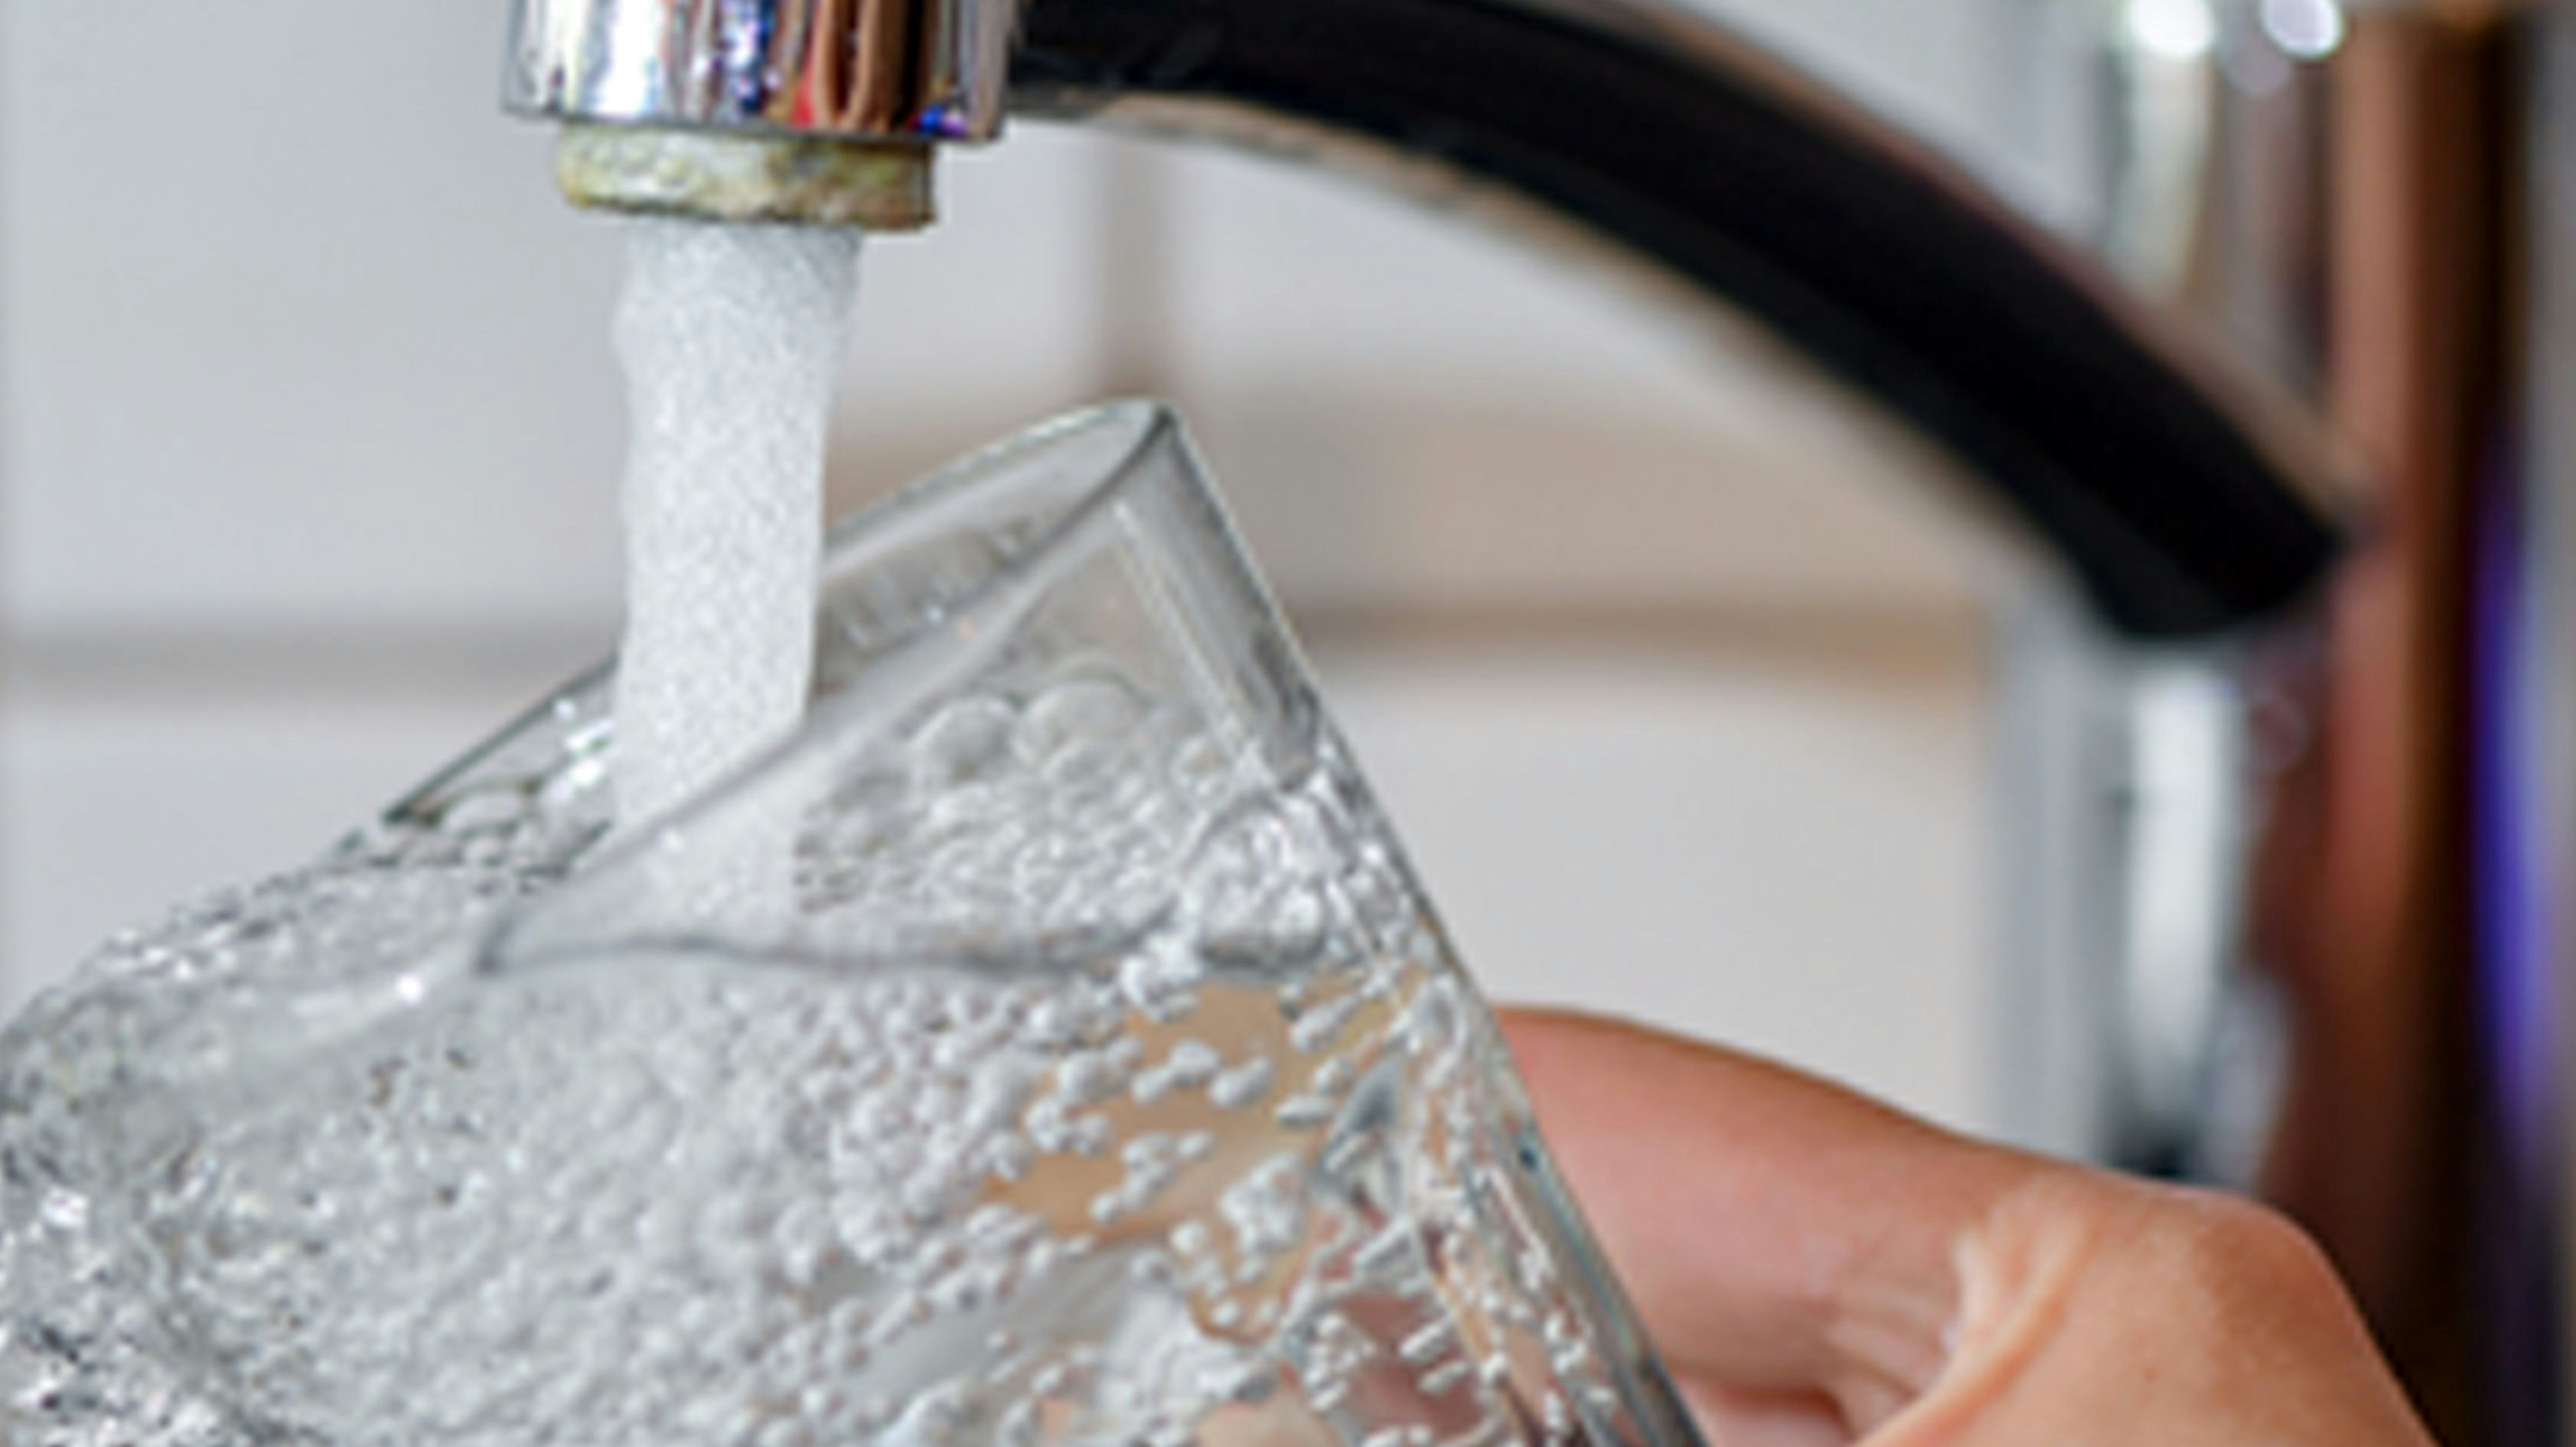 Trinkwasser wird teuer: Laut Beschluss des Stadtrates steigen die Gebühren mit Wirkung zum 1. Januar 2021 von 0,95 auf 1,02 Euro inklusive Mehrwertsteuer pro Kubikmeter. Foto: Patrick Pleul/dpa